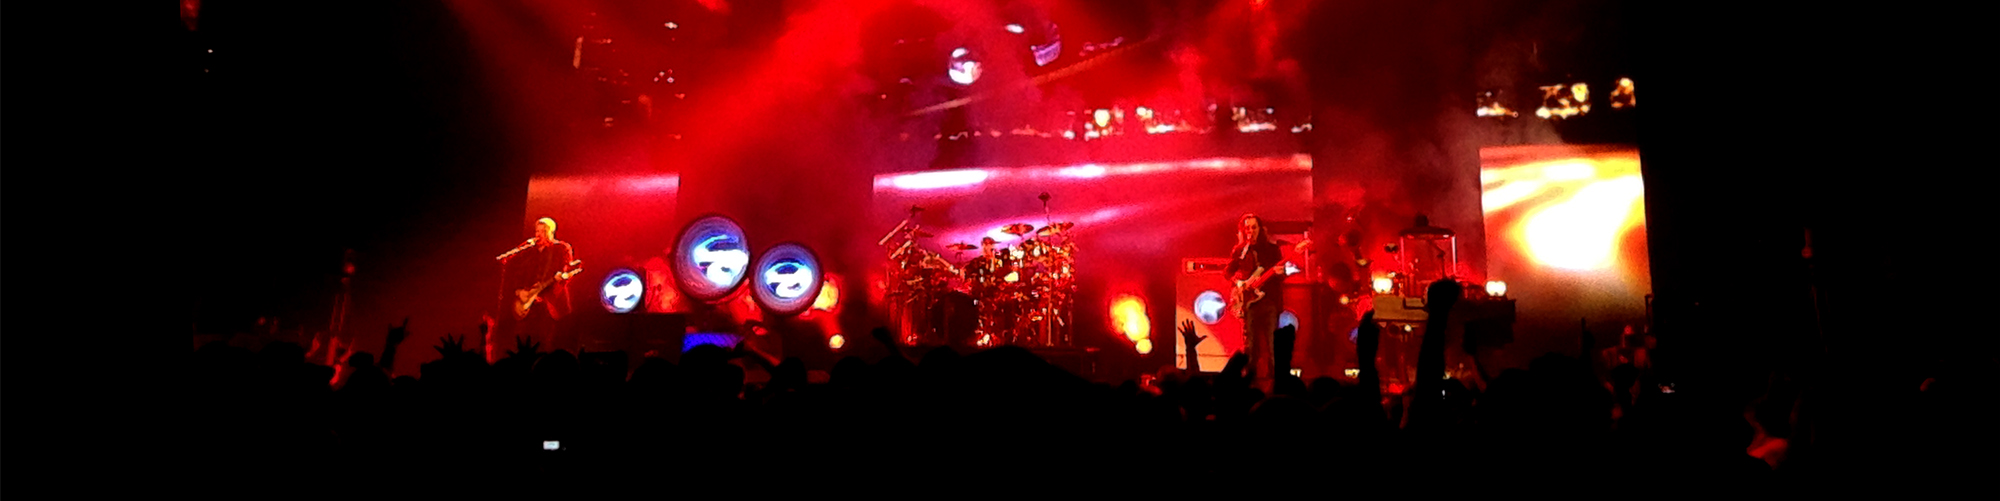 Rush: R40 Live Tour 2015, Toronto, ON #001